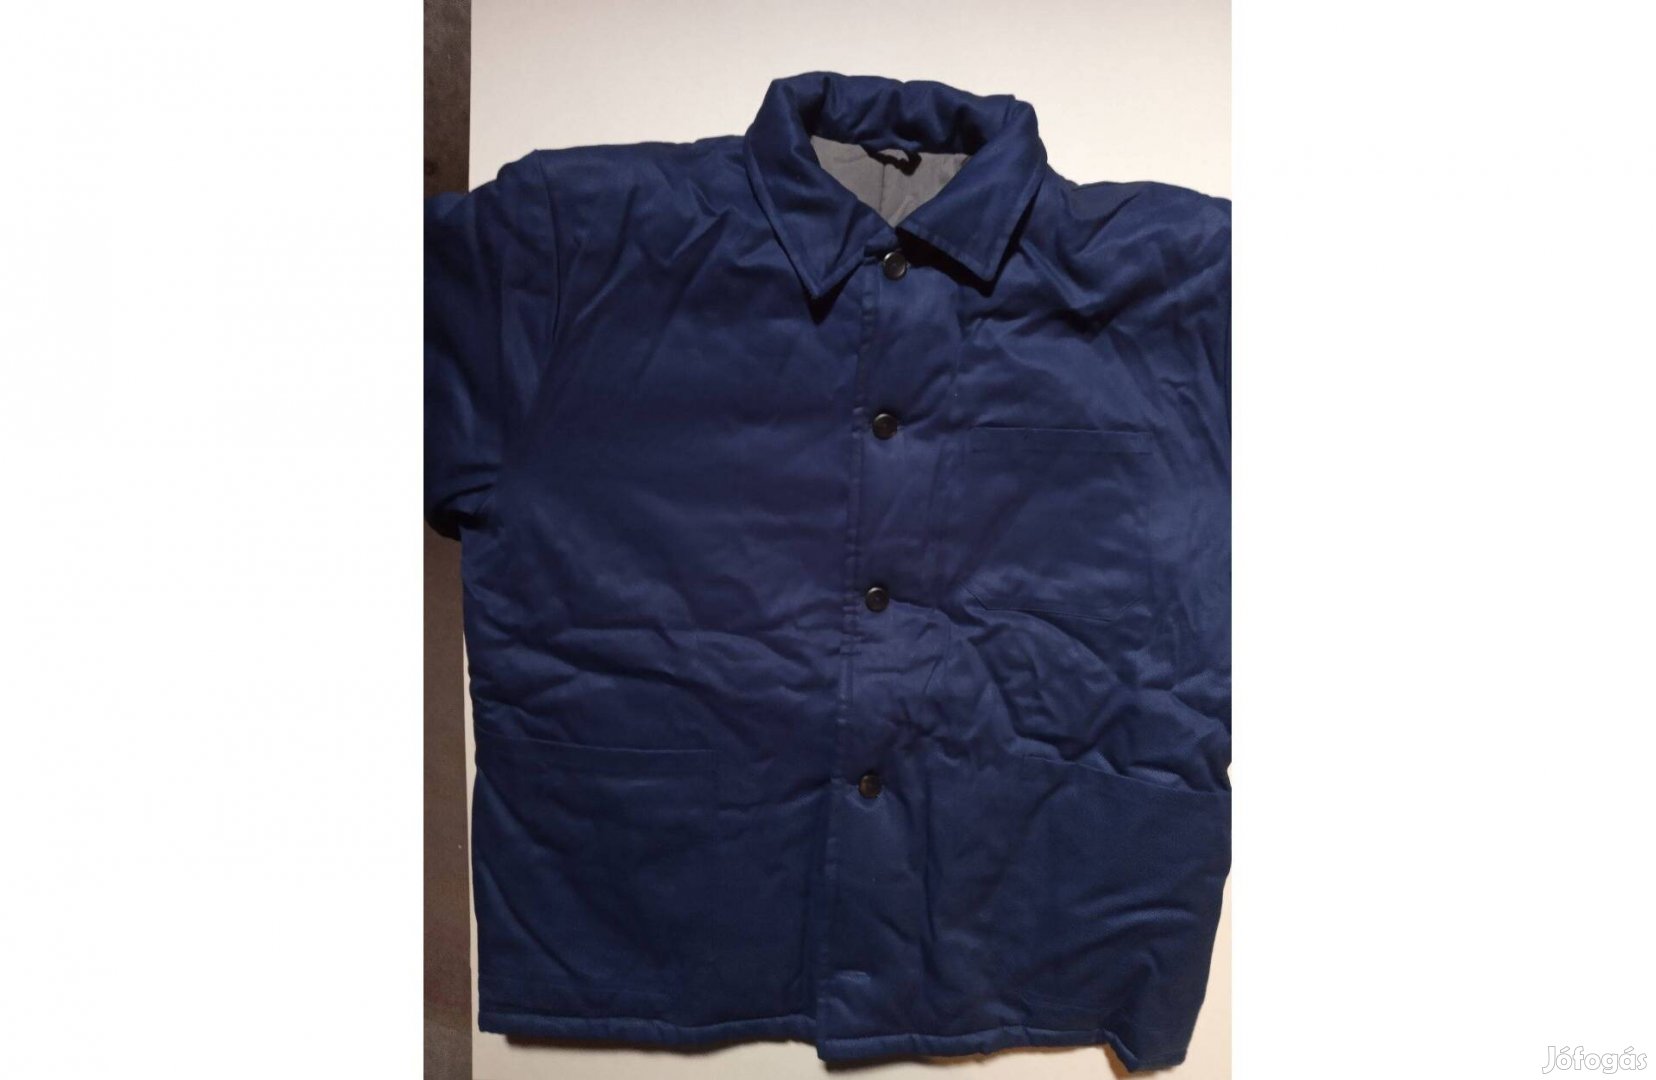 Vastag, téli, új férfi, fiú munkás kabát, kék színben 176-54.Piremon